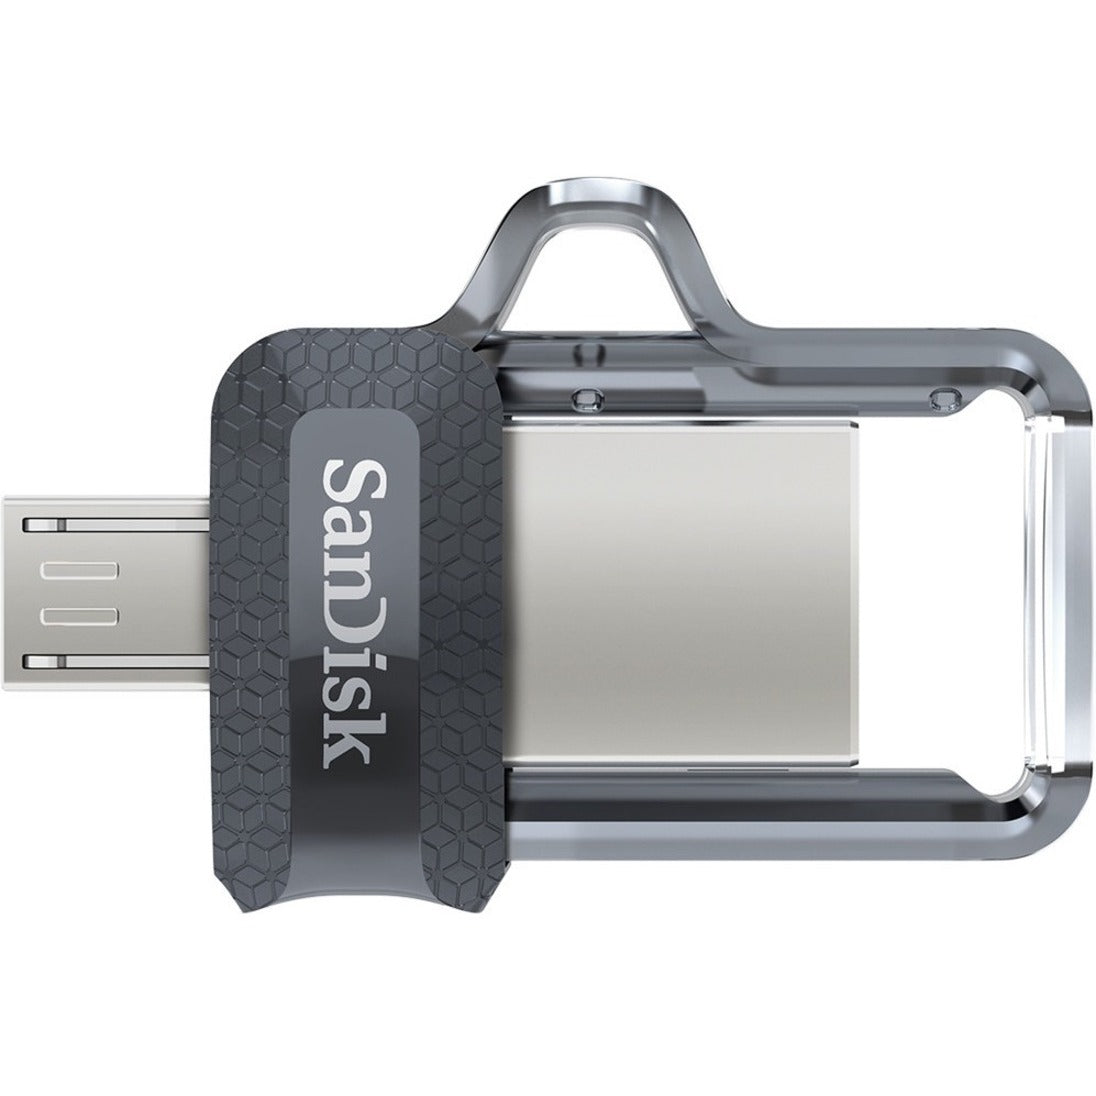 سانديسك SDDD3-064G-A46 الترا دوال درايف m3.0 - 64GB، فلاش درايف USB 3.0